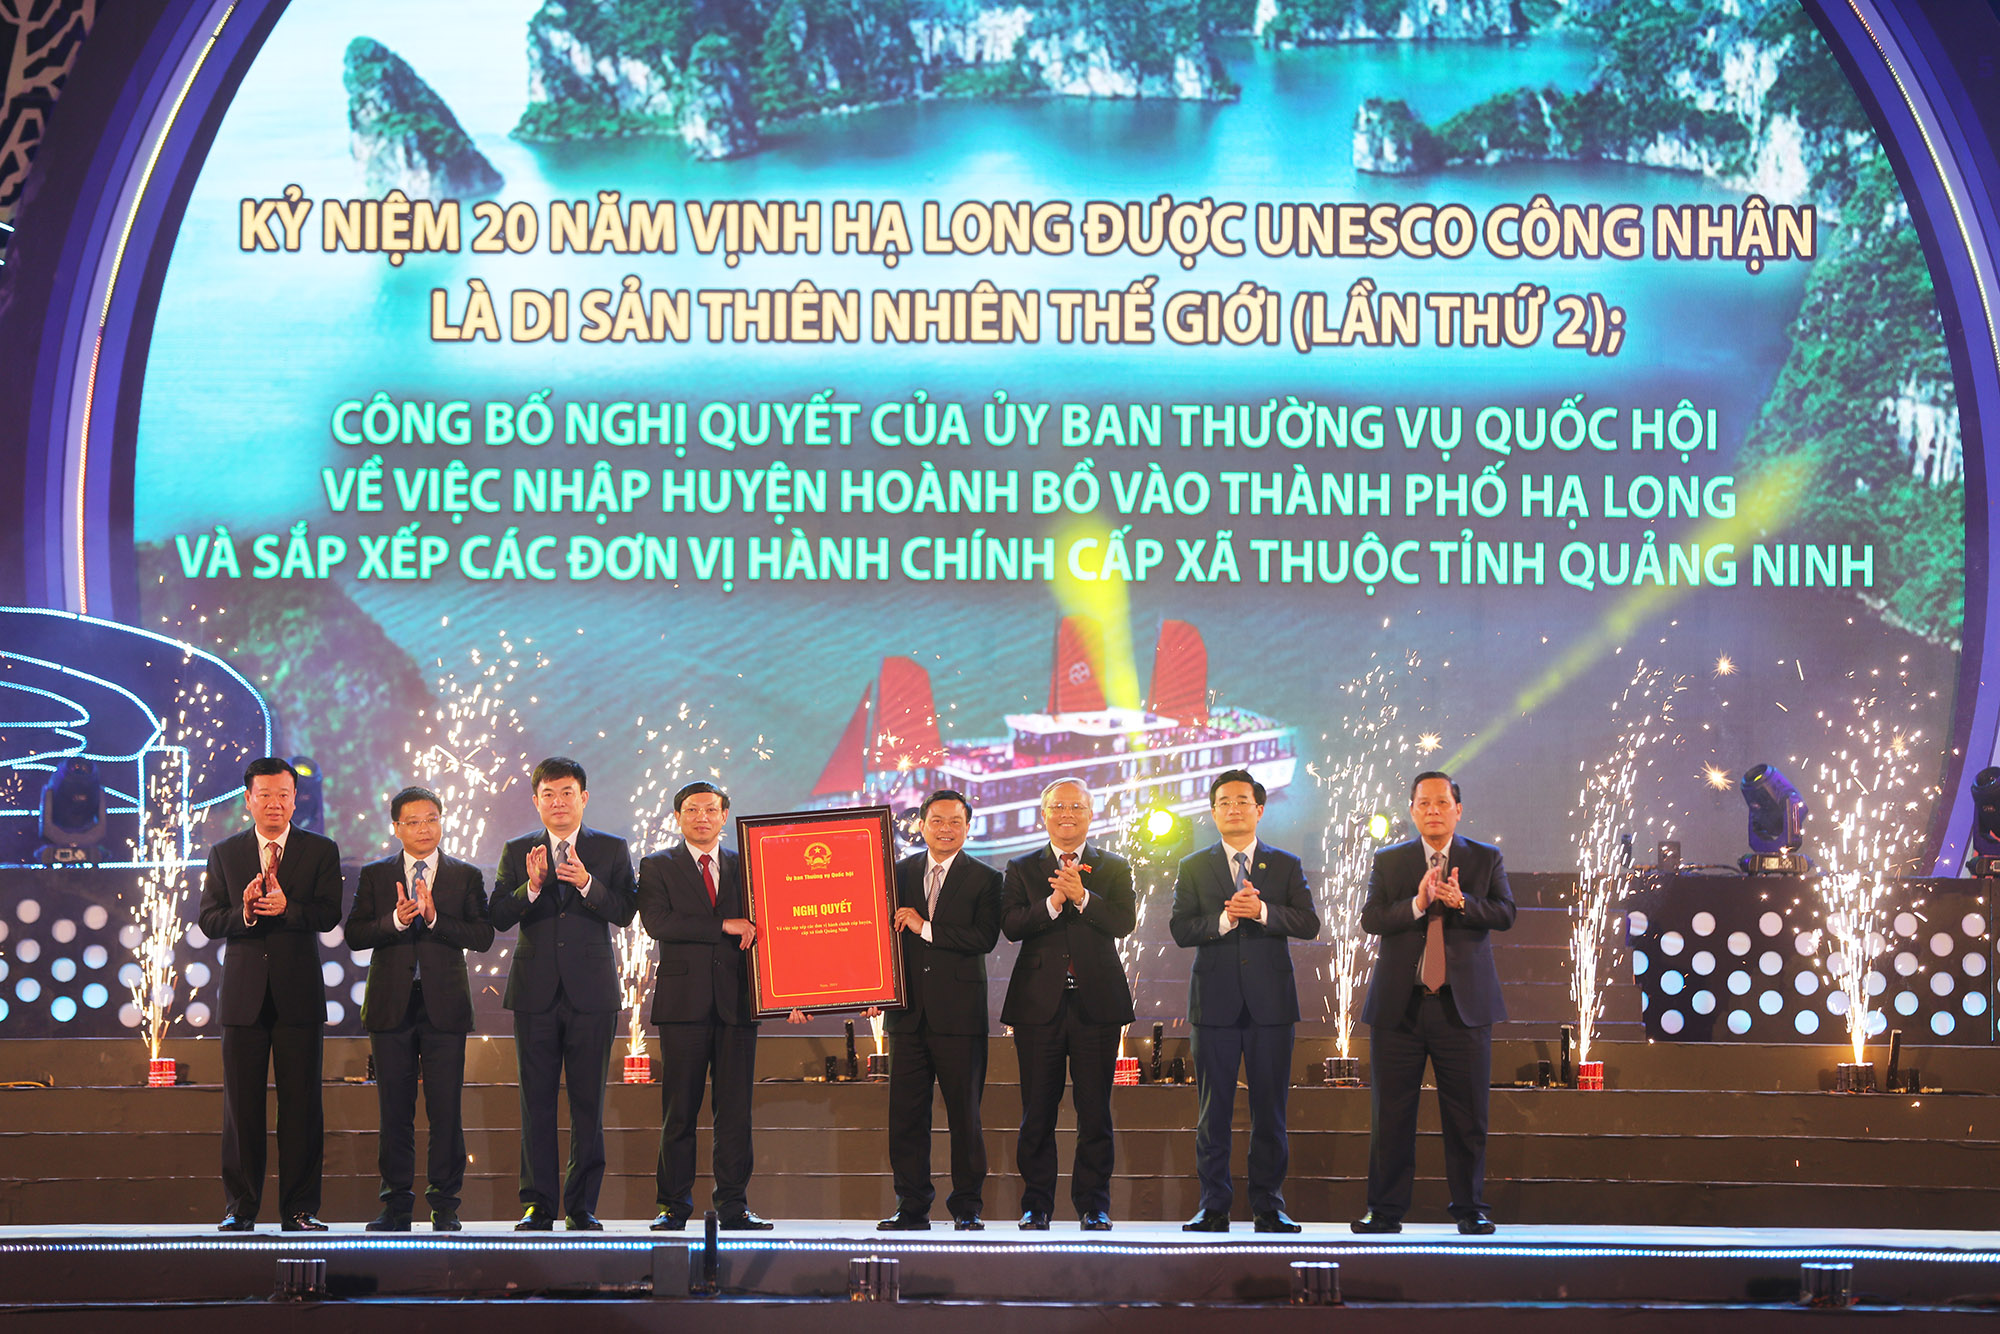 Kỷ niệm 20 năm Vịnh Hạ Long được công nhận Di sản thiên nhiên thế giới (lần thứ 2) và công bố sáp nhập Hoành Bồ vào Hạ Long